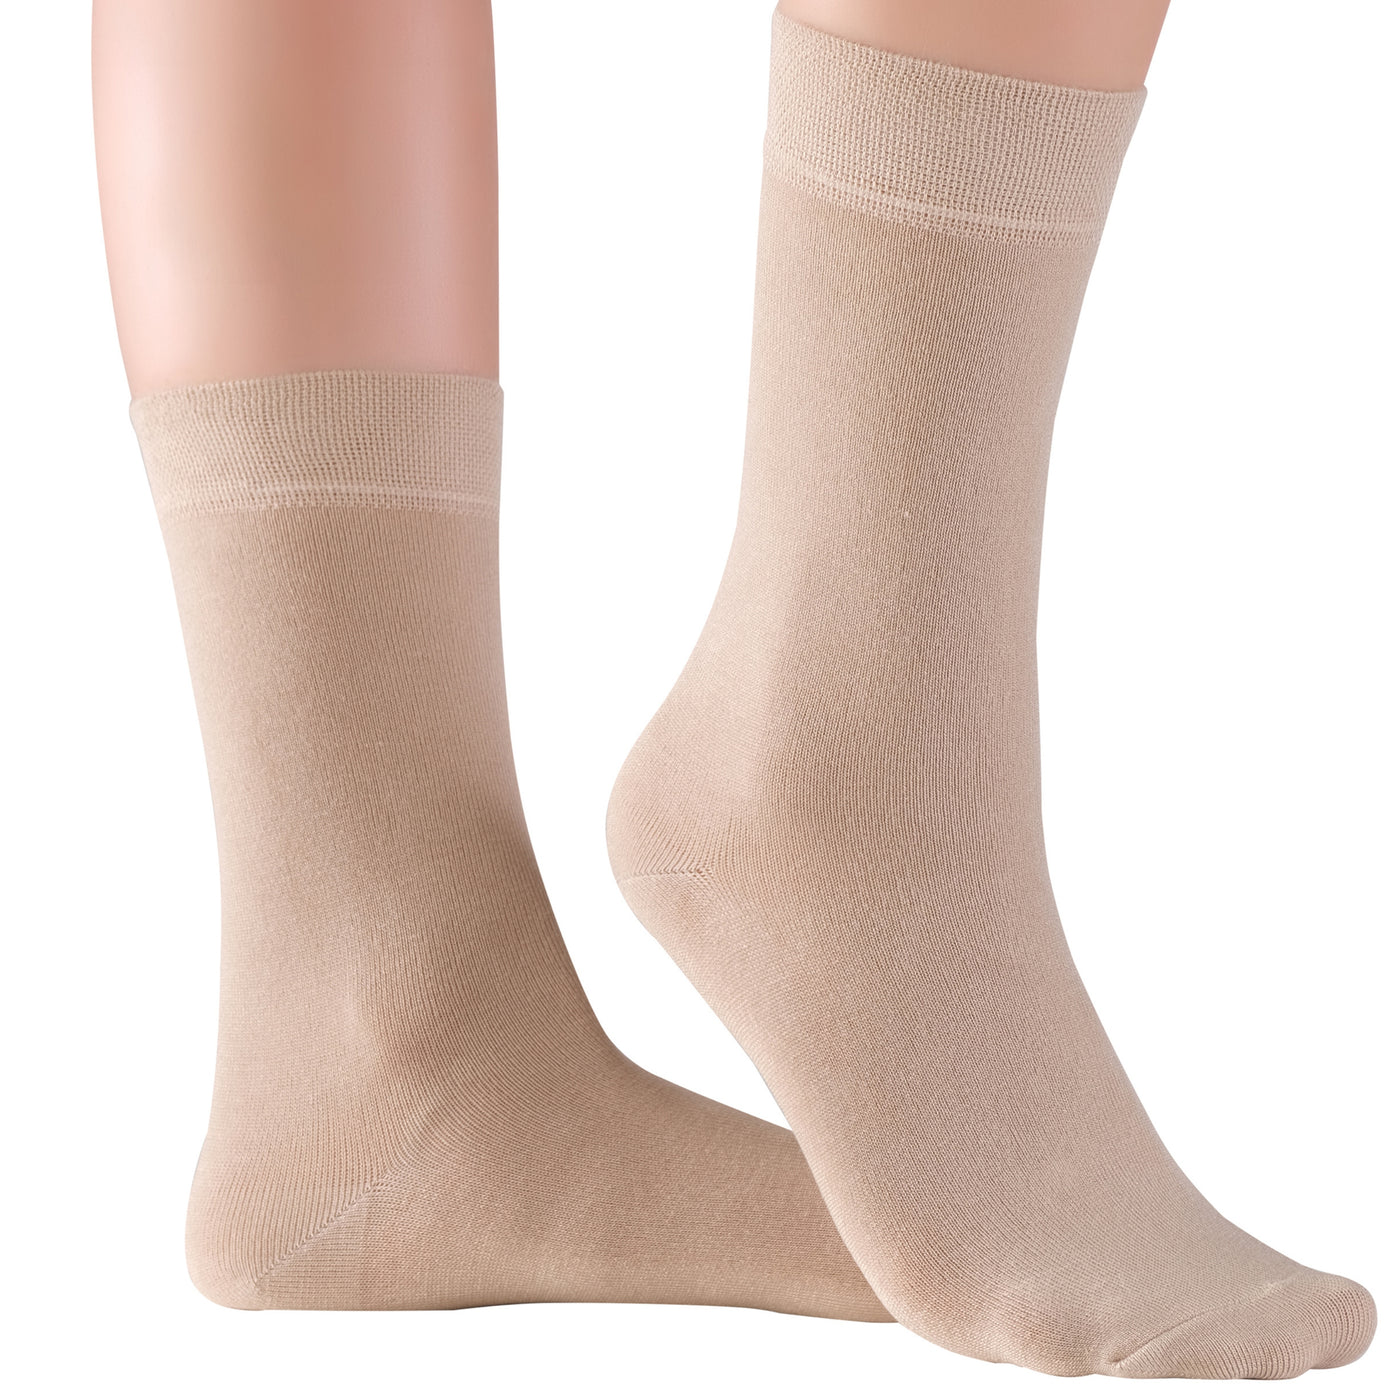  Elyfer-Socks-Black-Beige-Bamboo-Crew-Socks-for-Women #color_black-beige